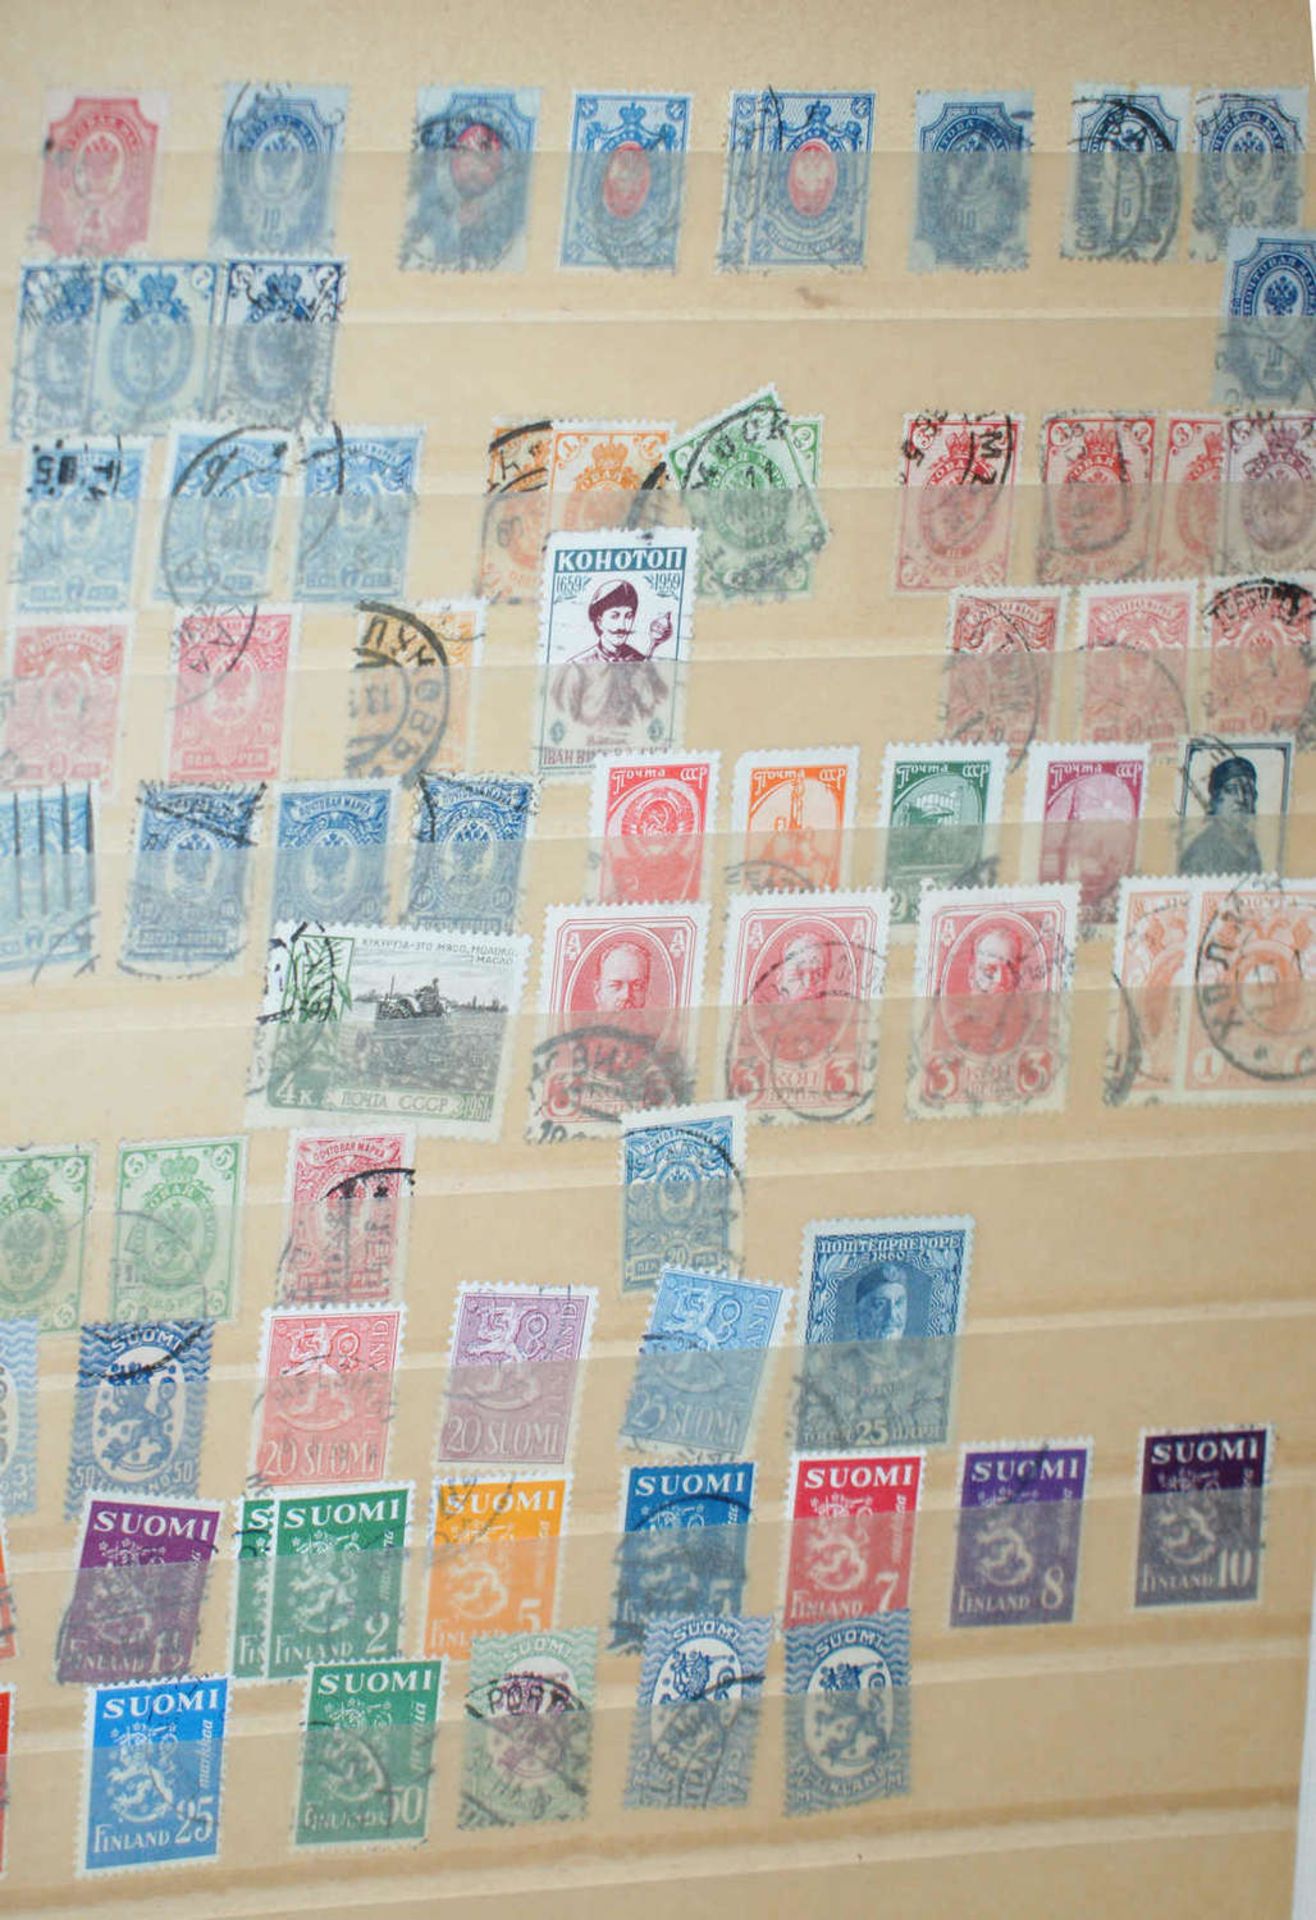 Europa - Briefmarken Dubletten Konvolut, bestehend aus 9 Alben, teilweise schlecht gelagert. - Image 2 of 5